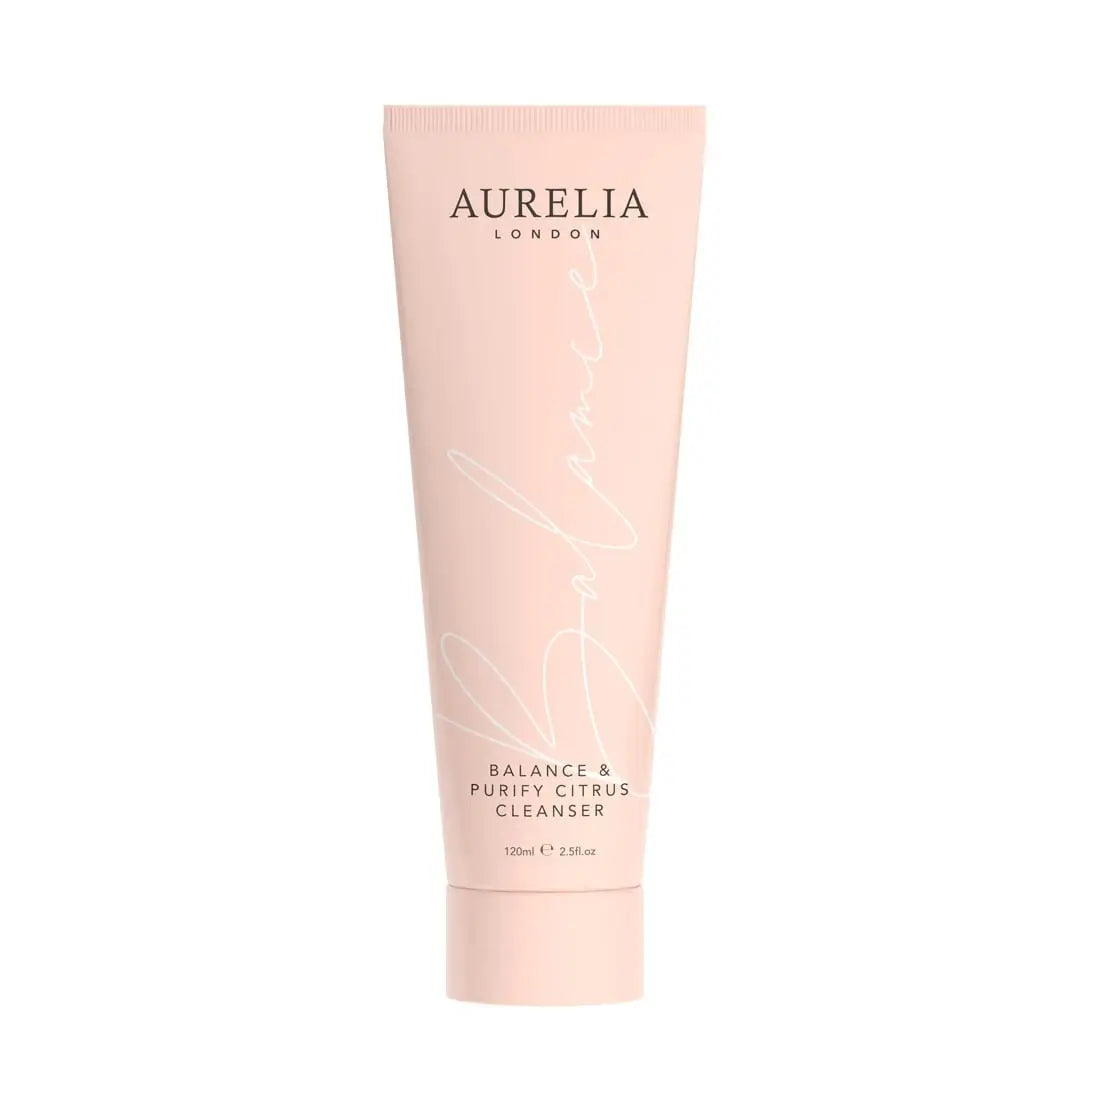 Aurelia London Balance & Purify Citrus Cleanser 120ml